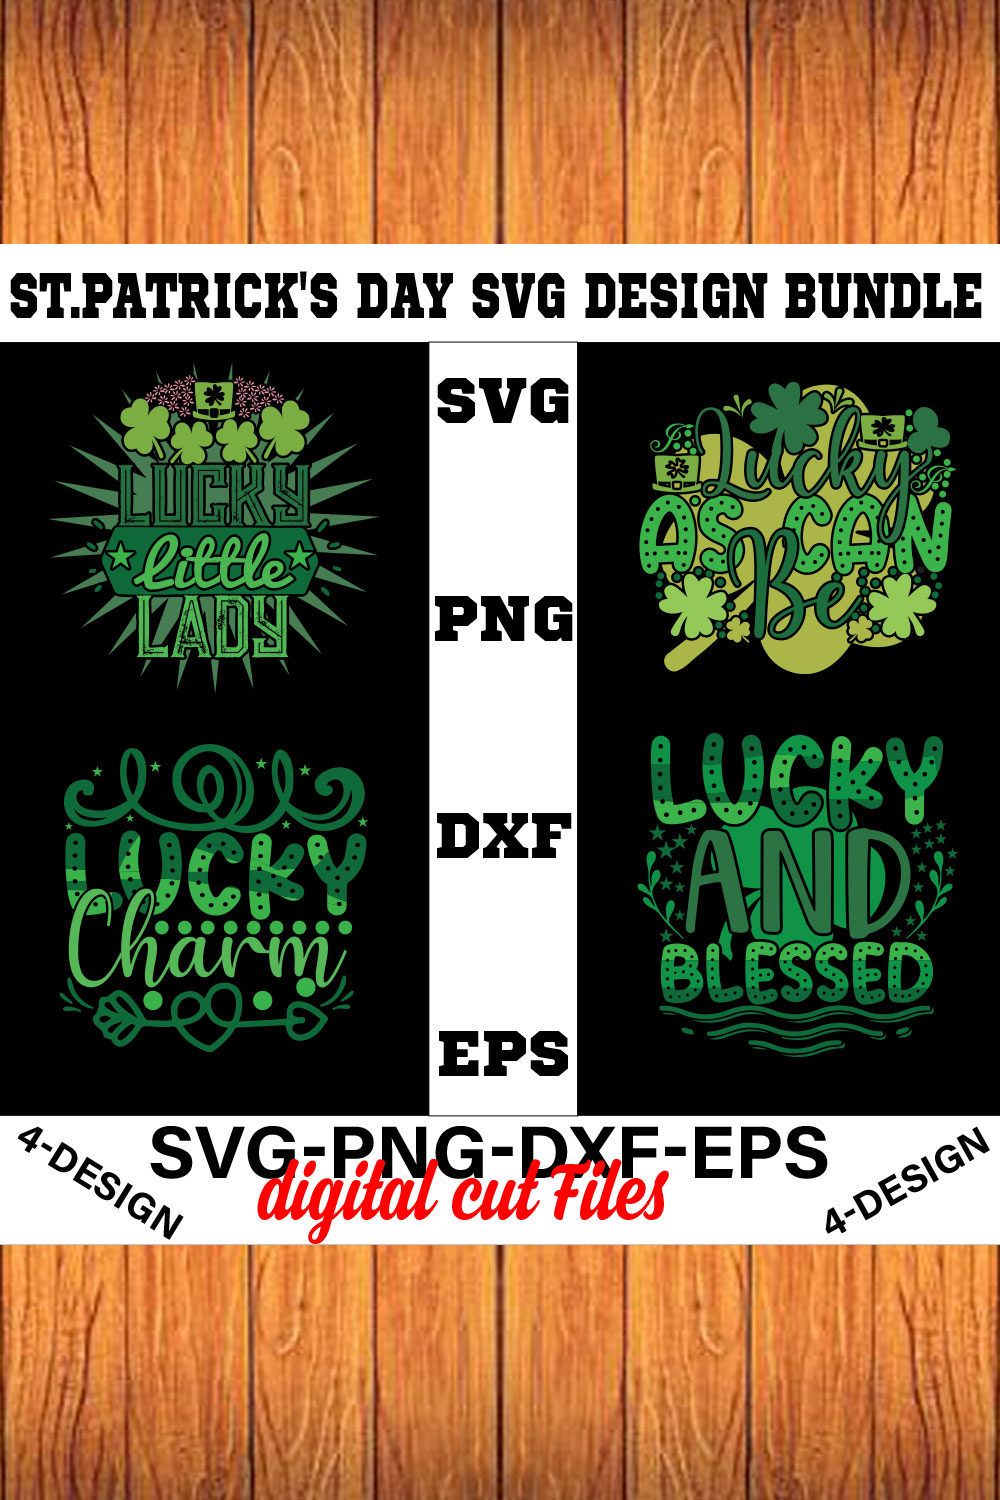 Stpatrick's Day Svg Design Bundle Vol-03 pinterest preview image.